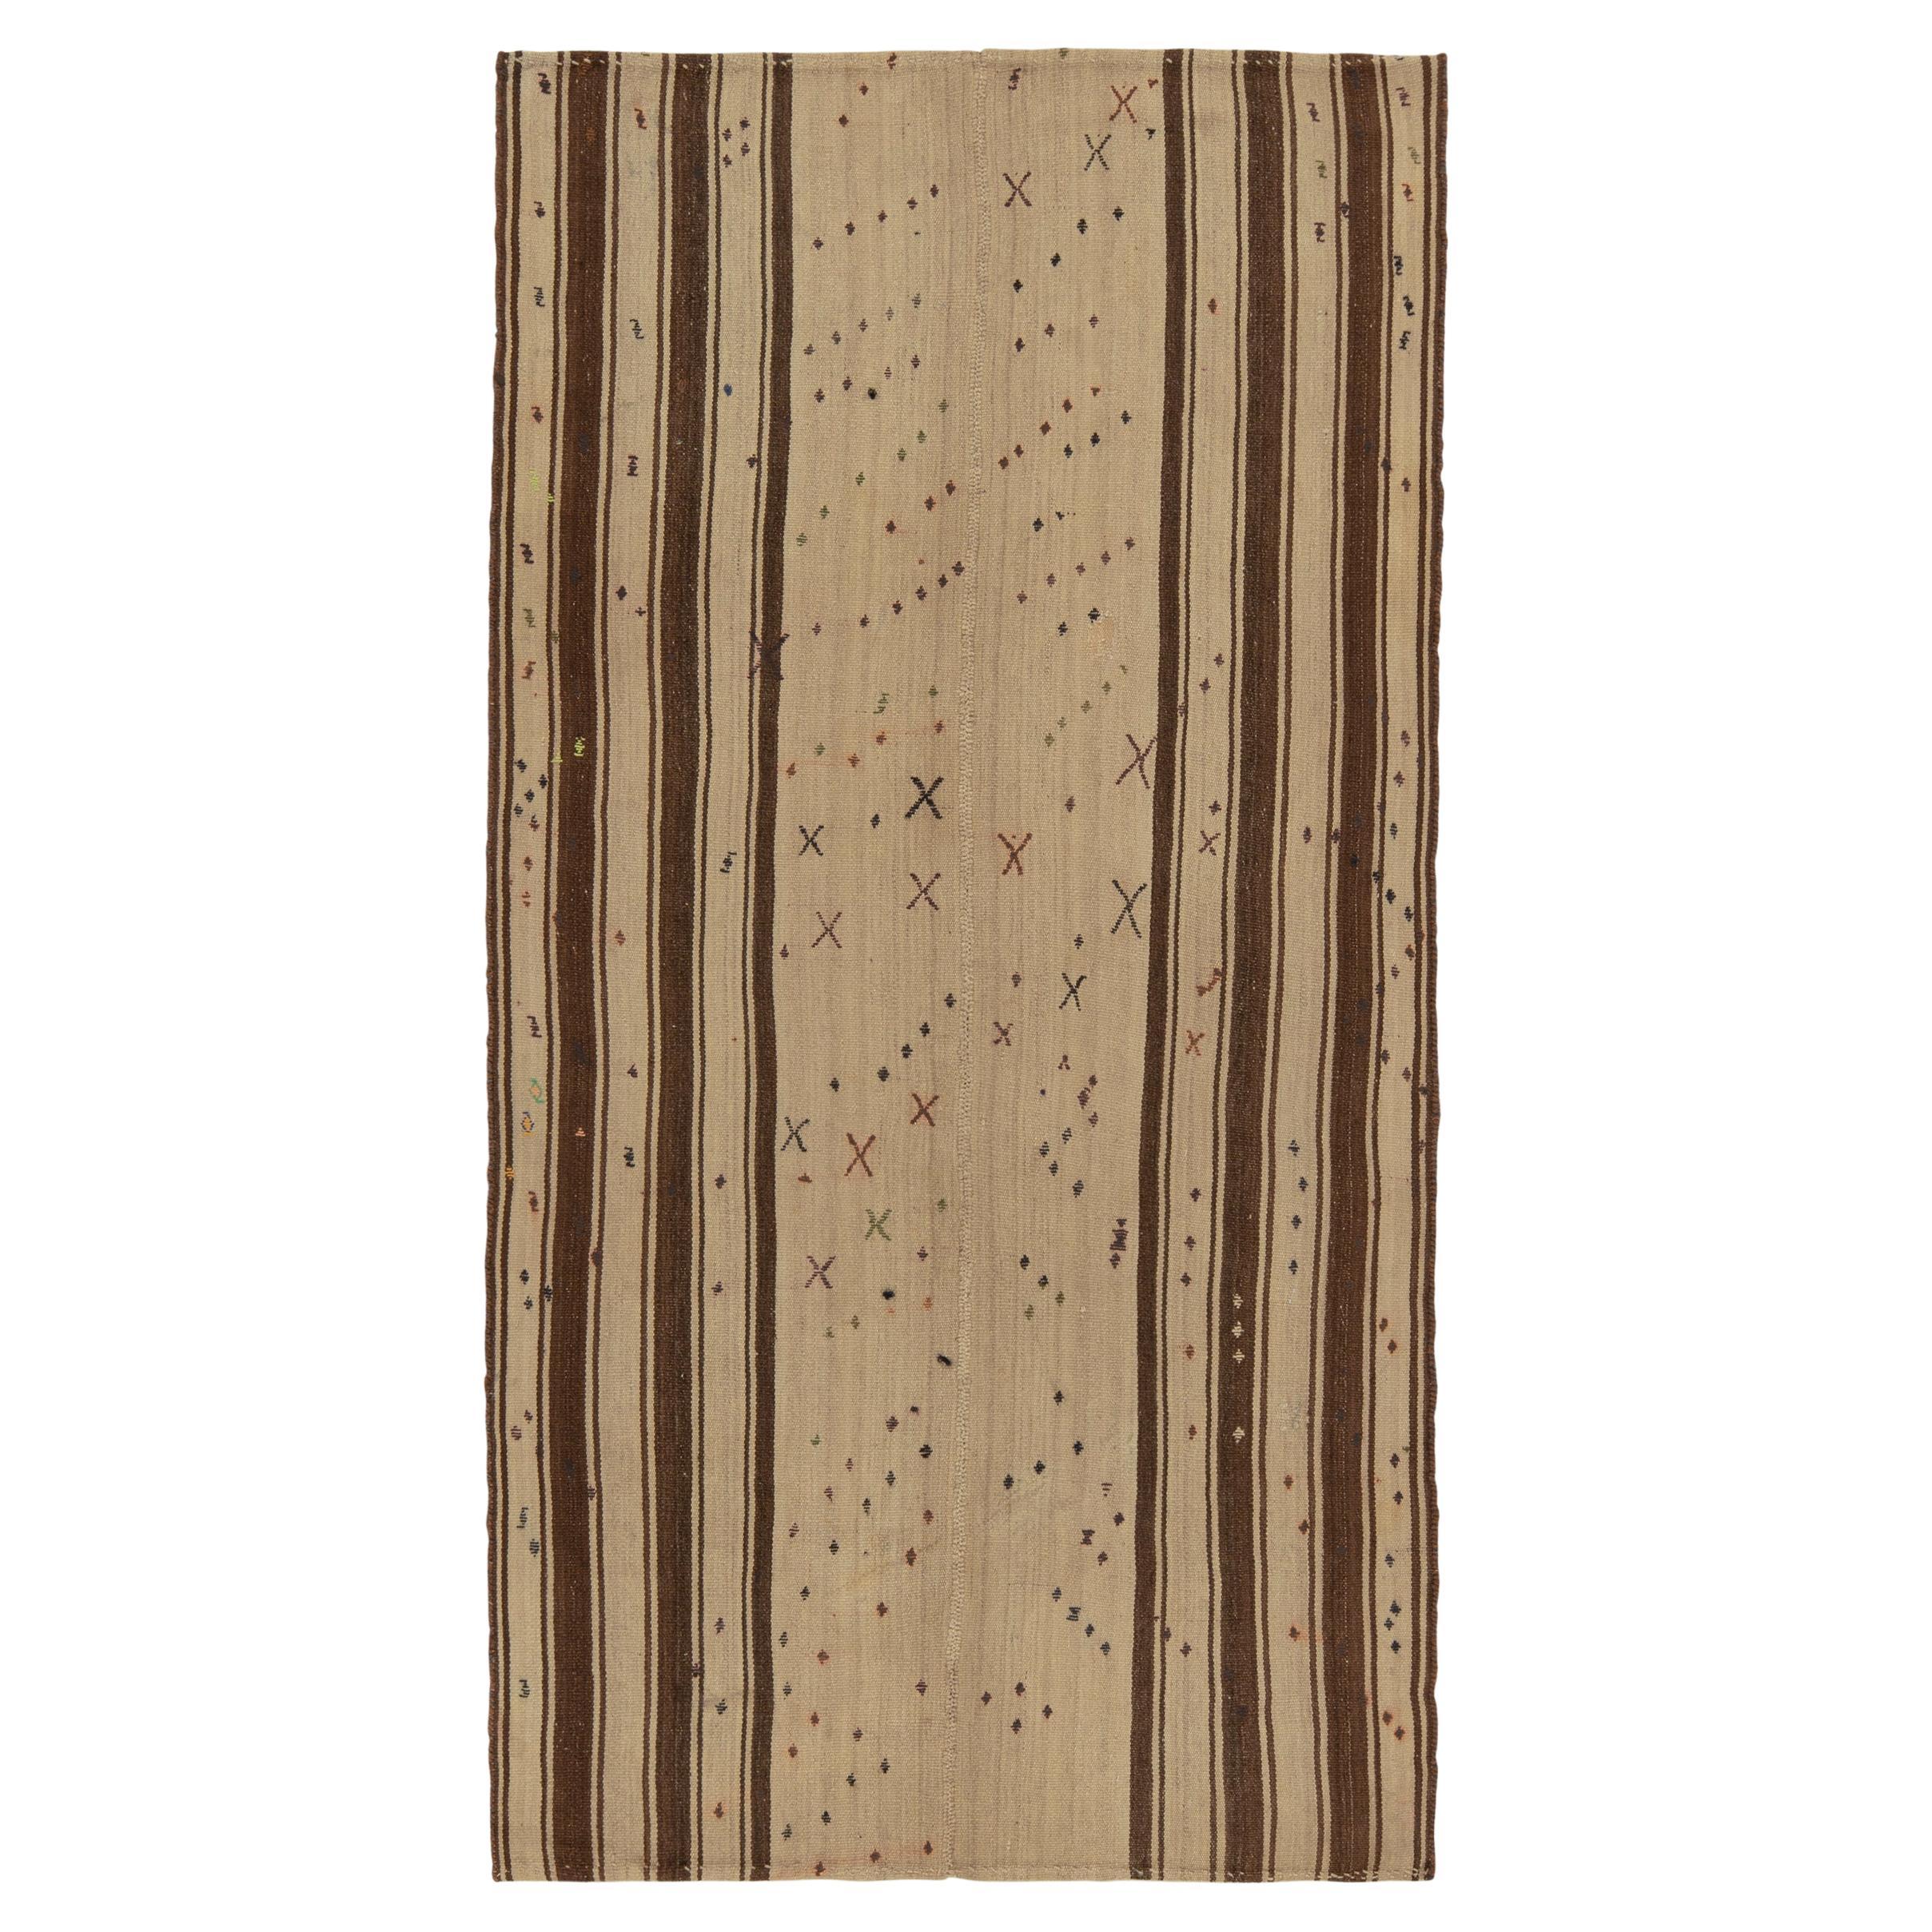 1950s, Vintage Turkish Kilim Rug in Beige Geometric Patterns by Rug & Kilim For Sale